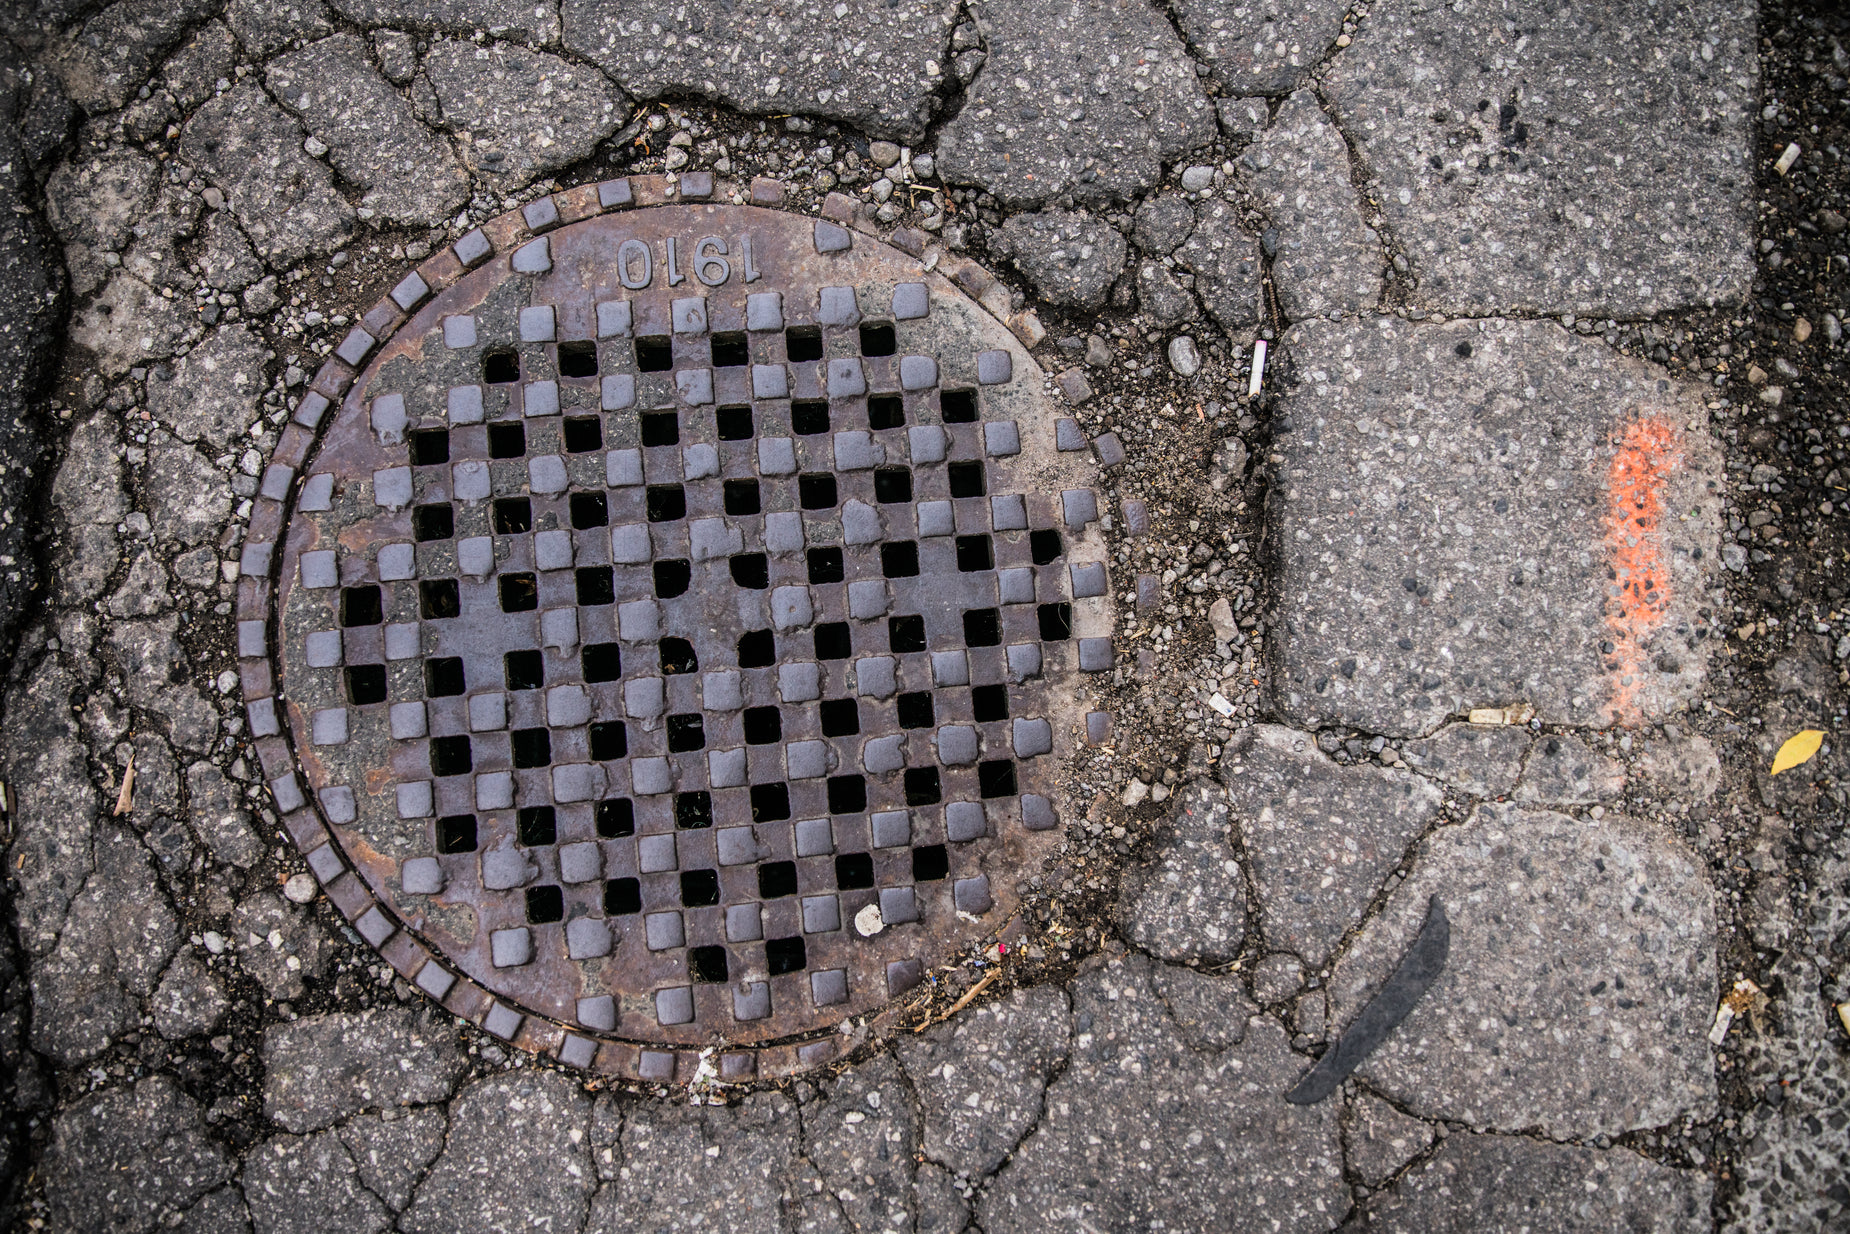 a manhole cover laying on a brick sidewalk